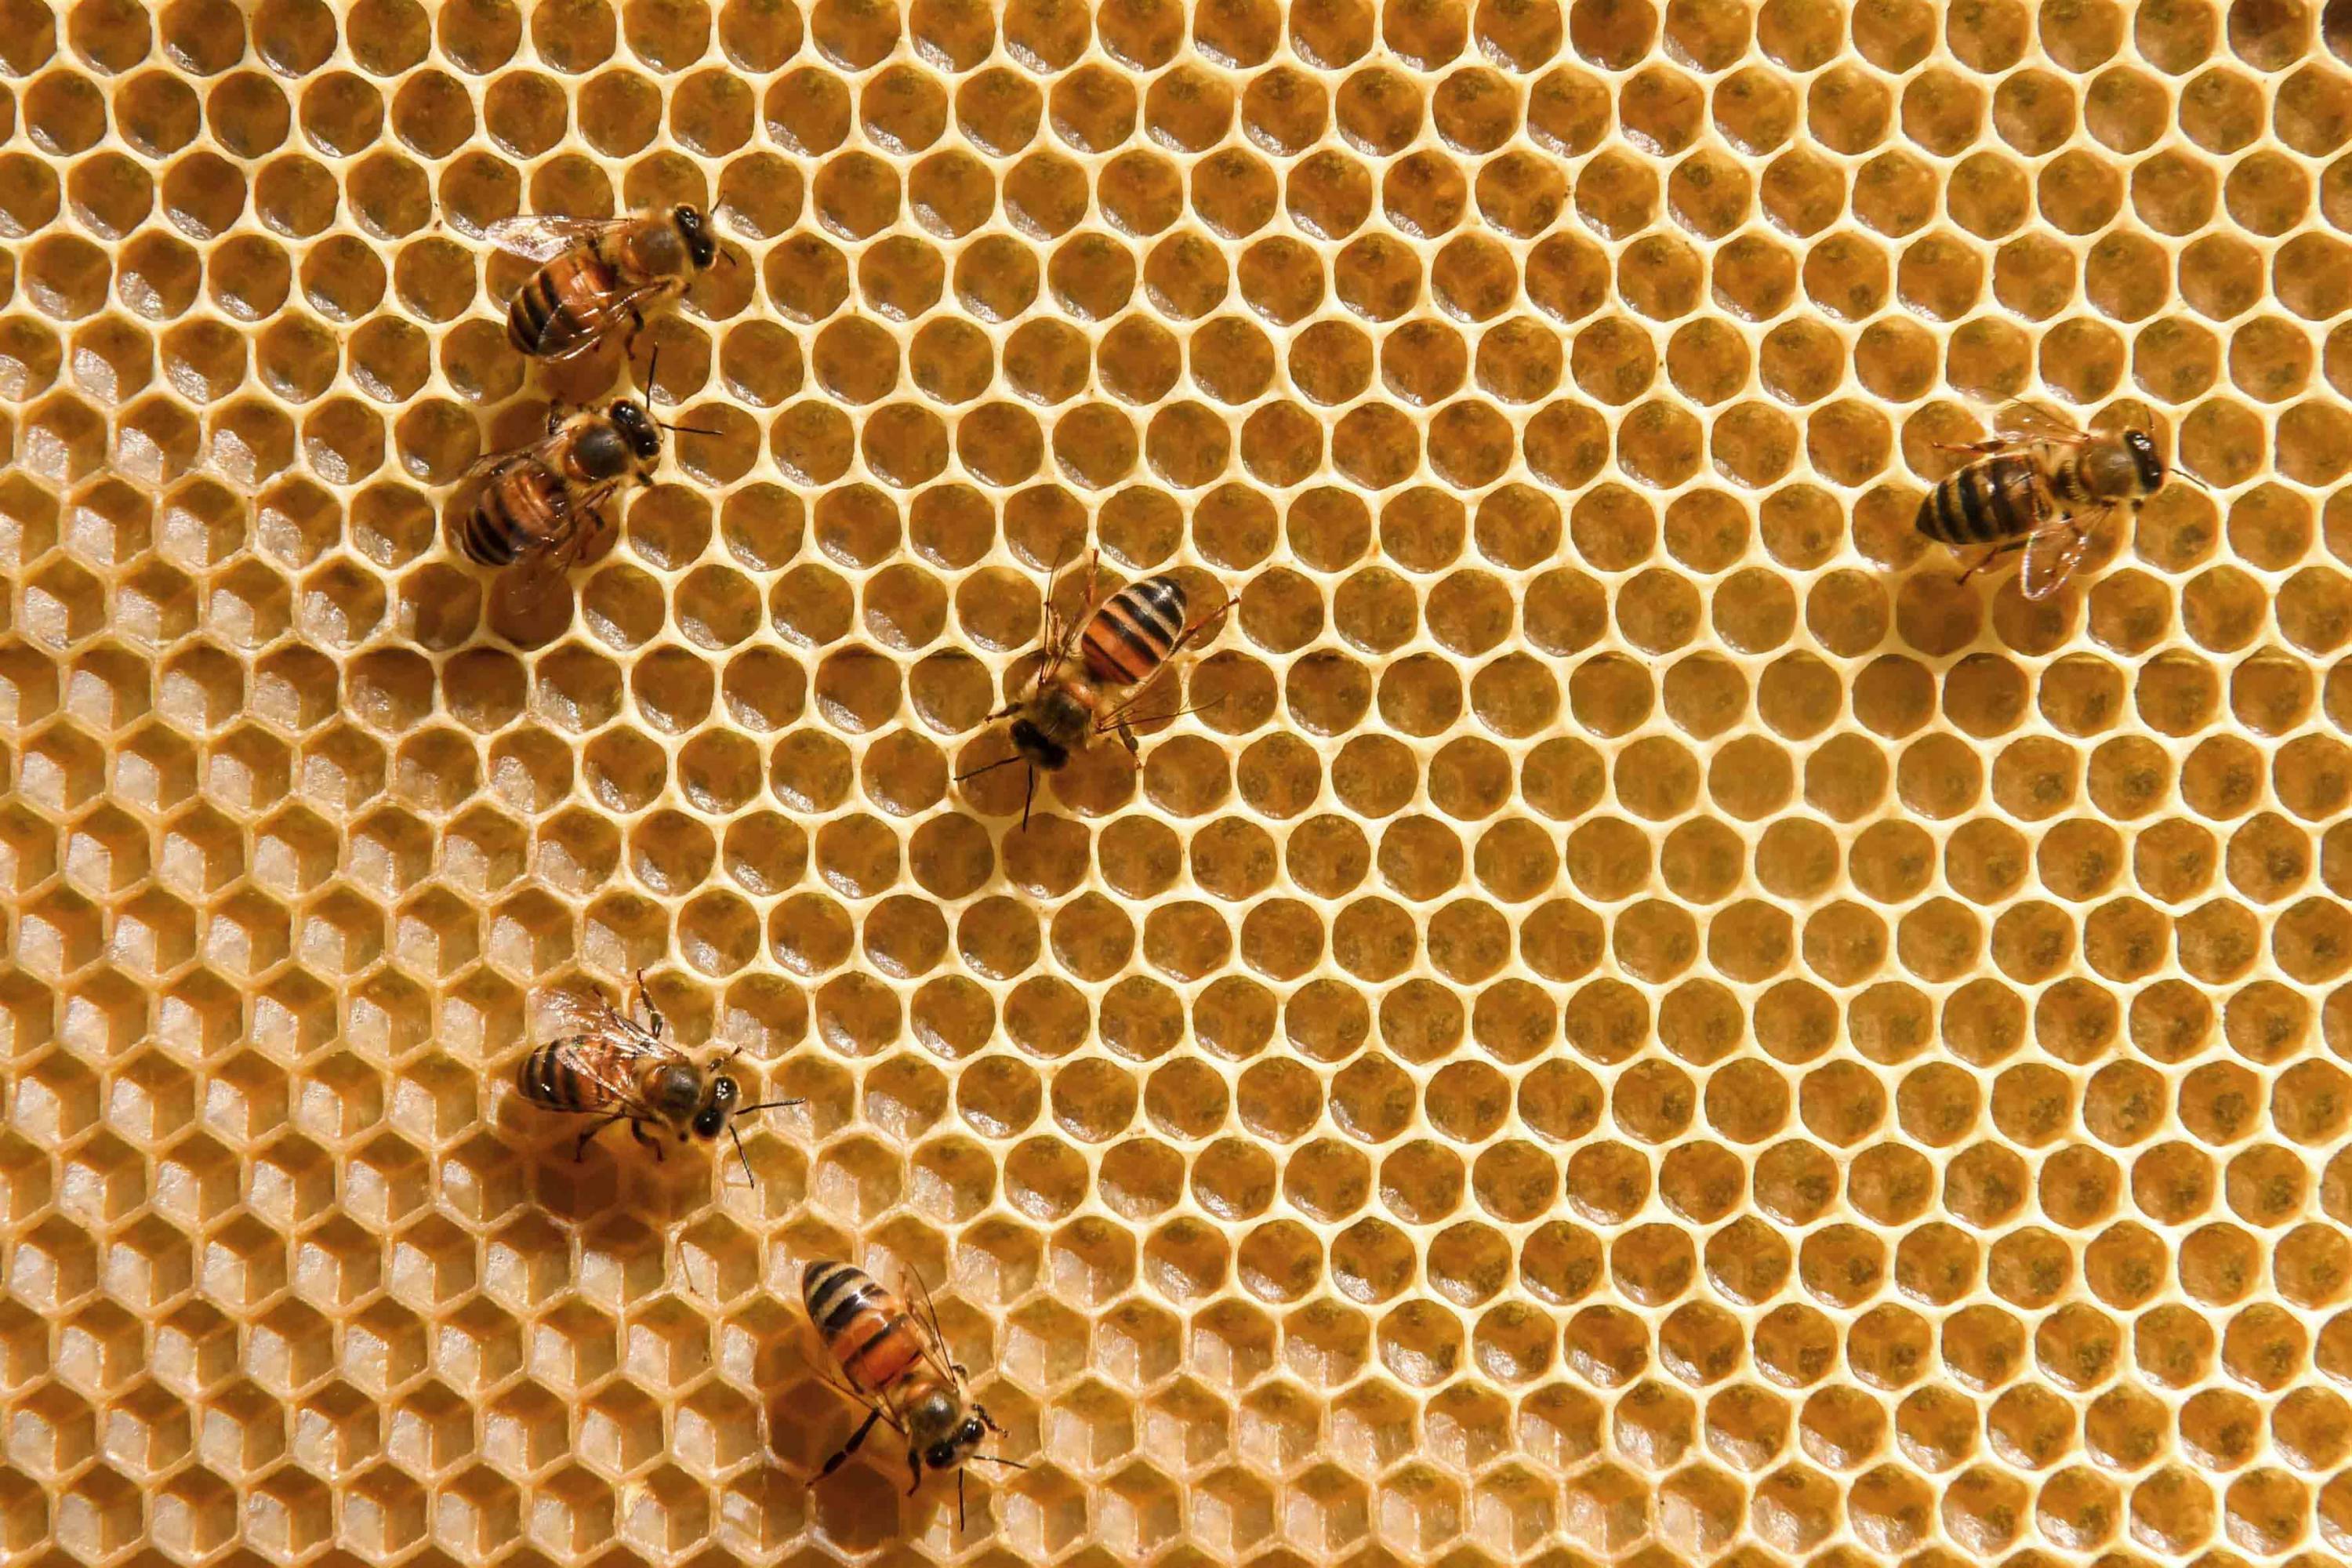 Veneno de abeja tiene efectos positivos contra el mal de Parkinson